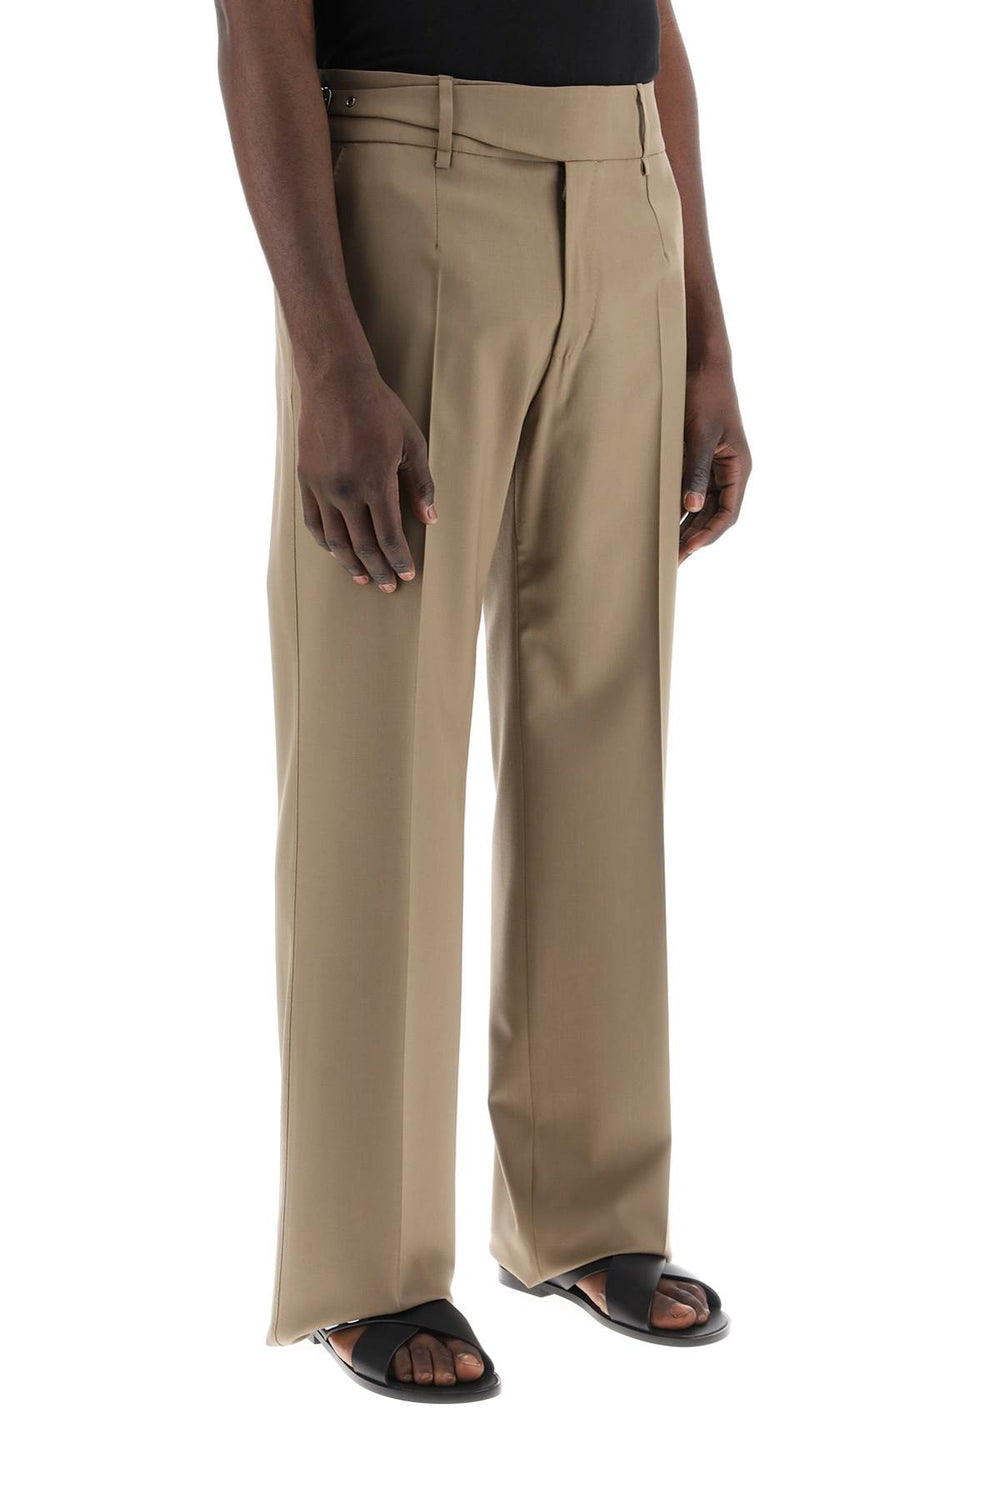 Dolce & gabbana tailored stretch trousers in bi-st-1